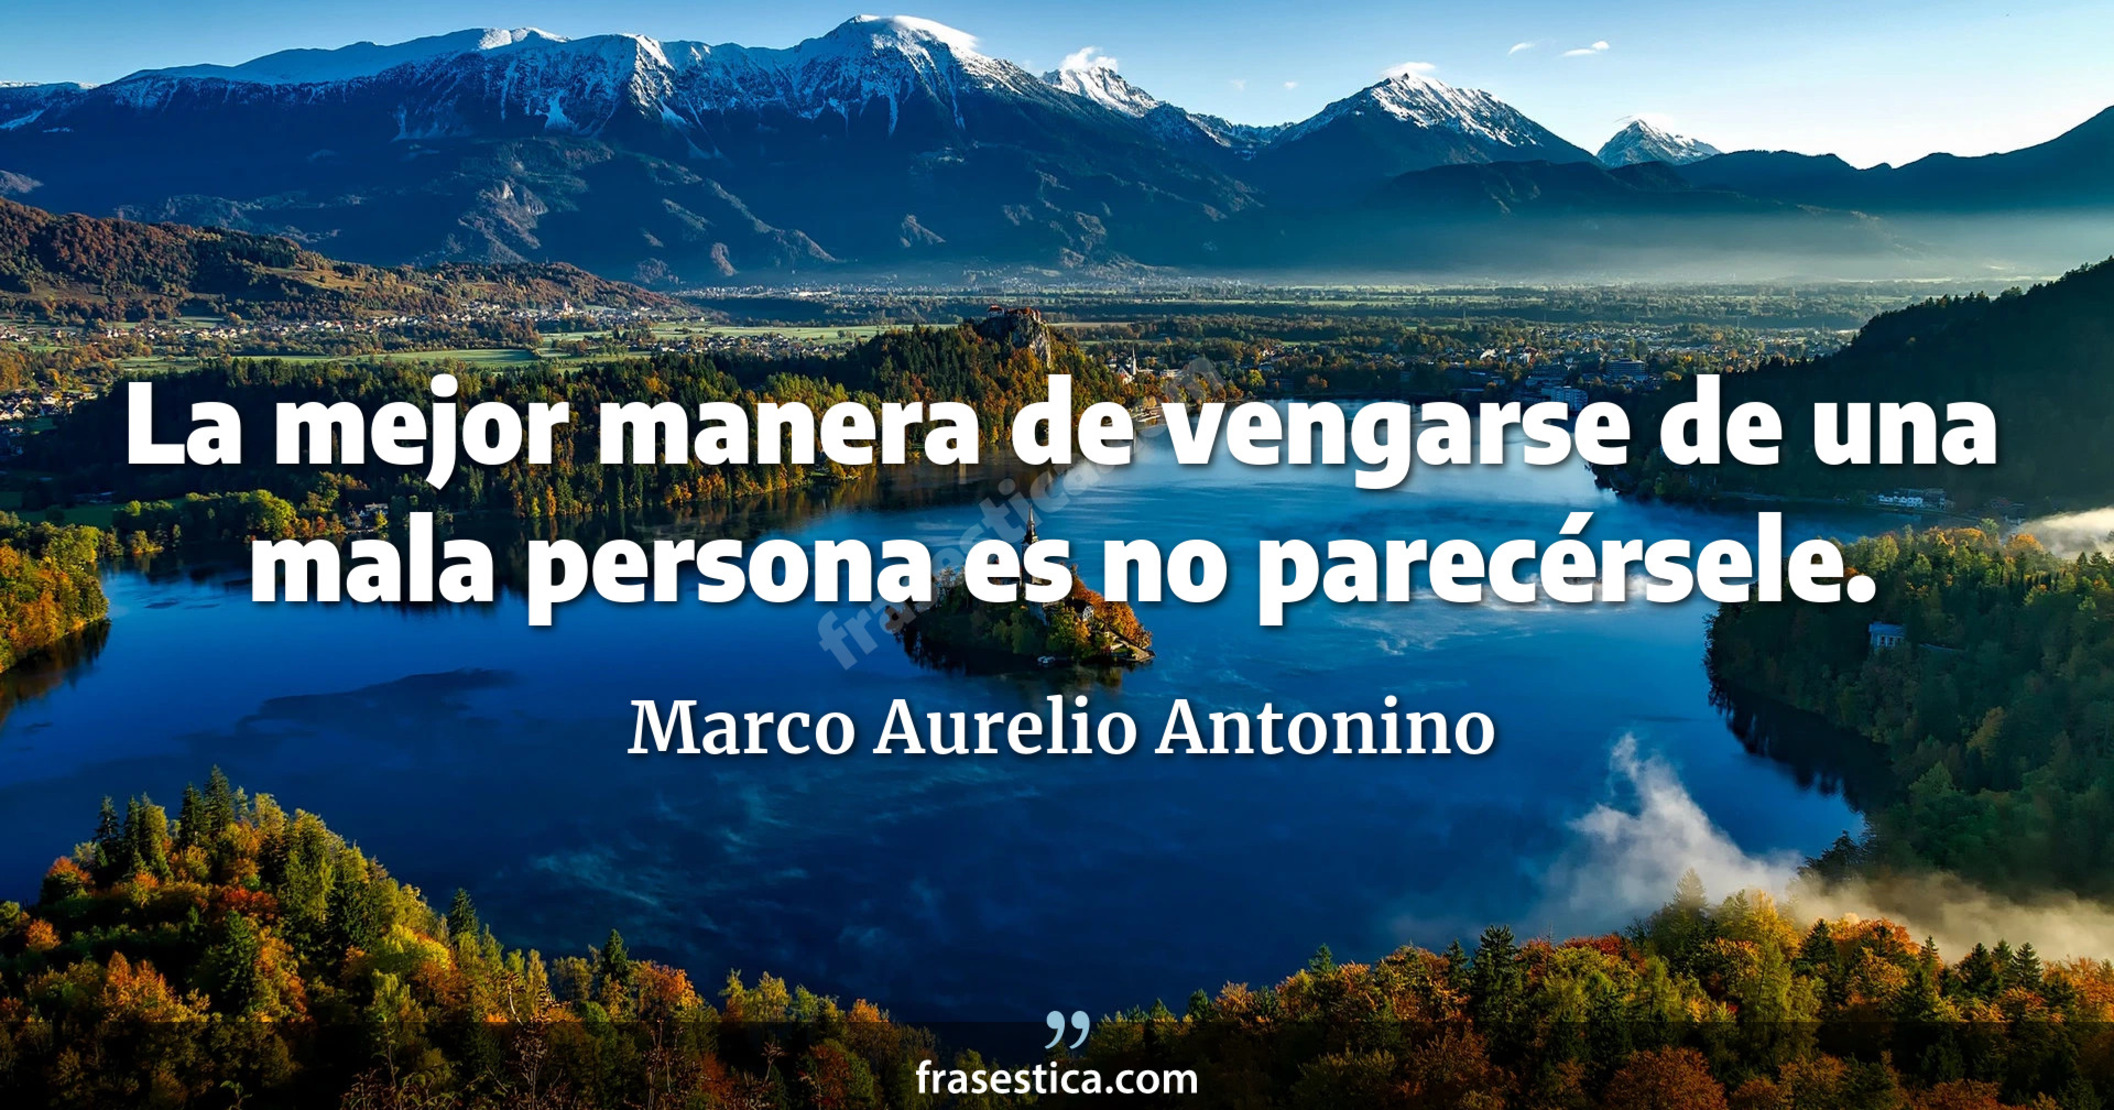 La mejor manera de vengarse de una mala persona es no parecérsele. - Marco Aurelio Antonino